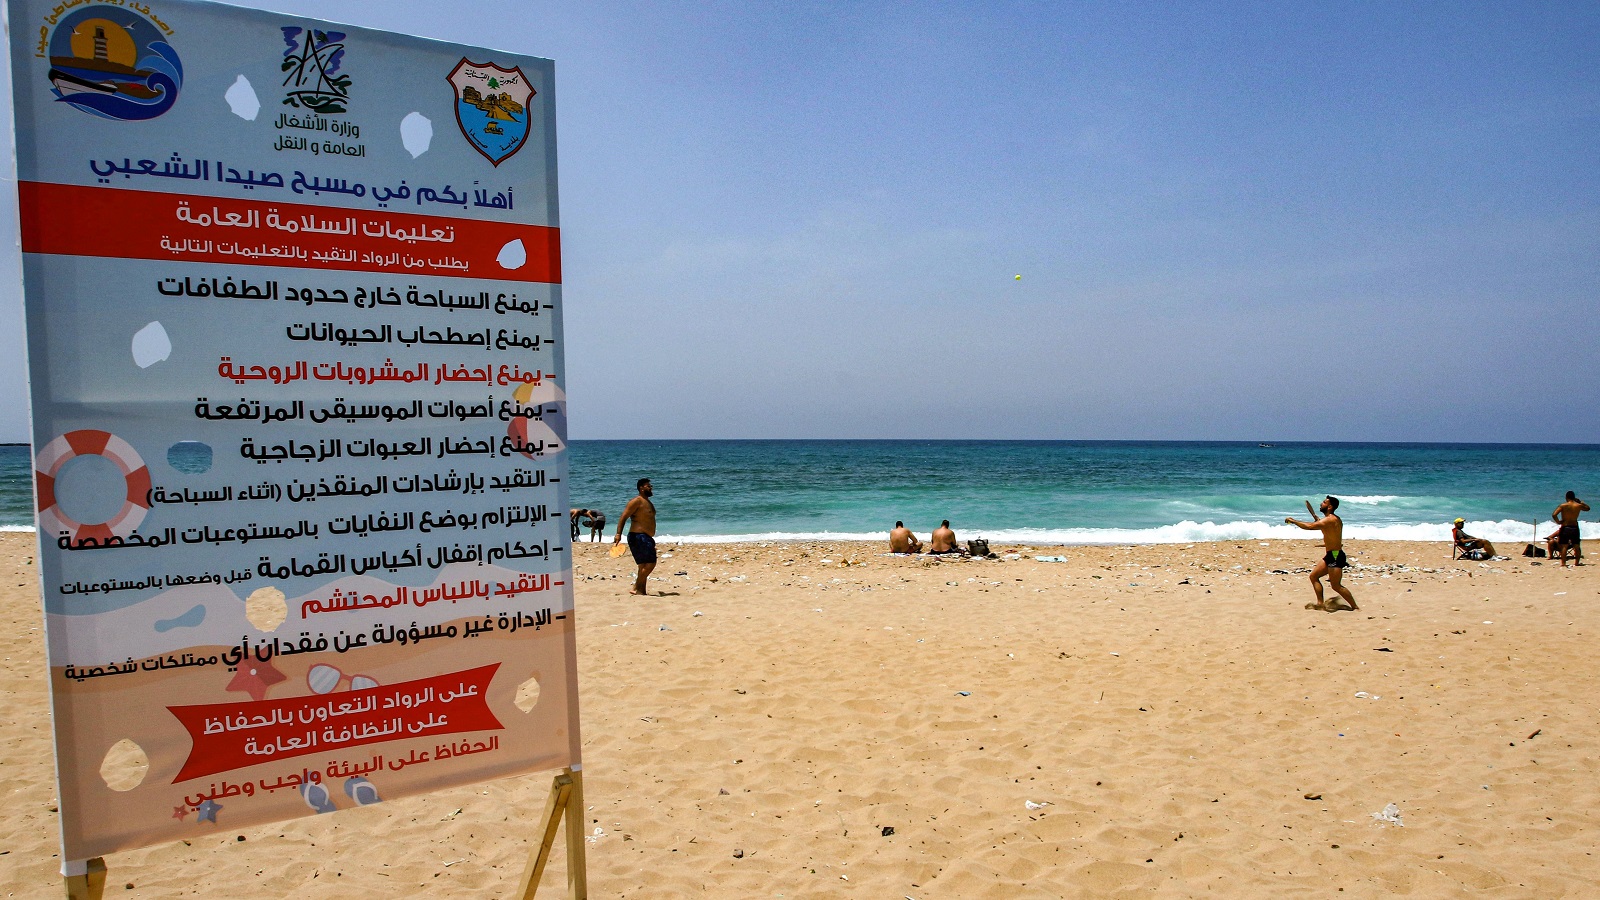 رأي قانوني بقرار بلدية صيدا المتعلق بالشاطئ والمايوه